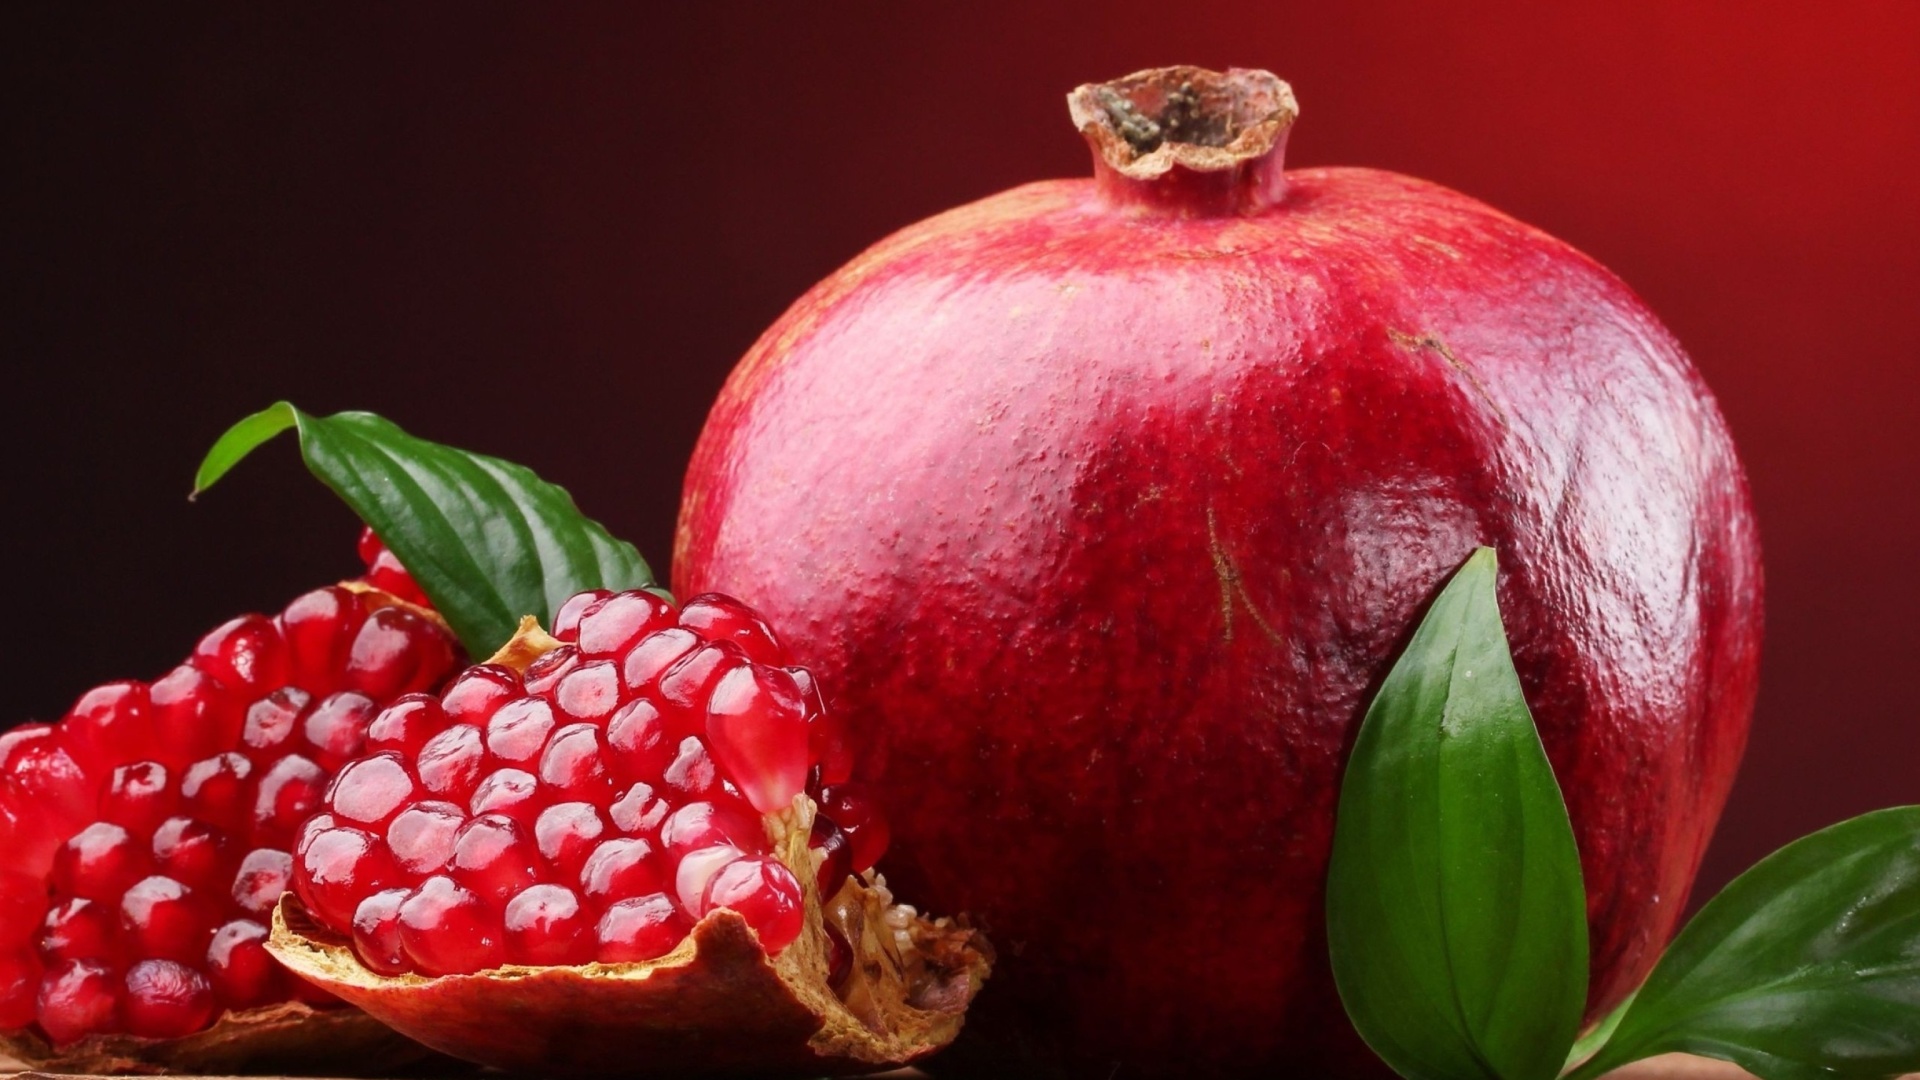 Ripe fruit pomegranate wallpaper 1920x1080